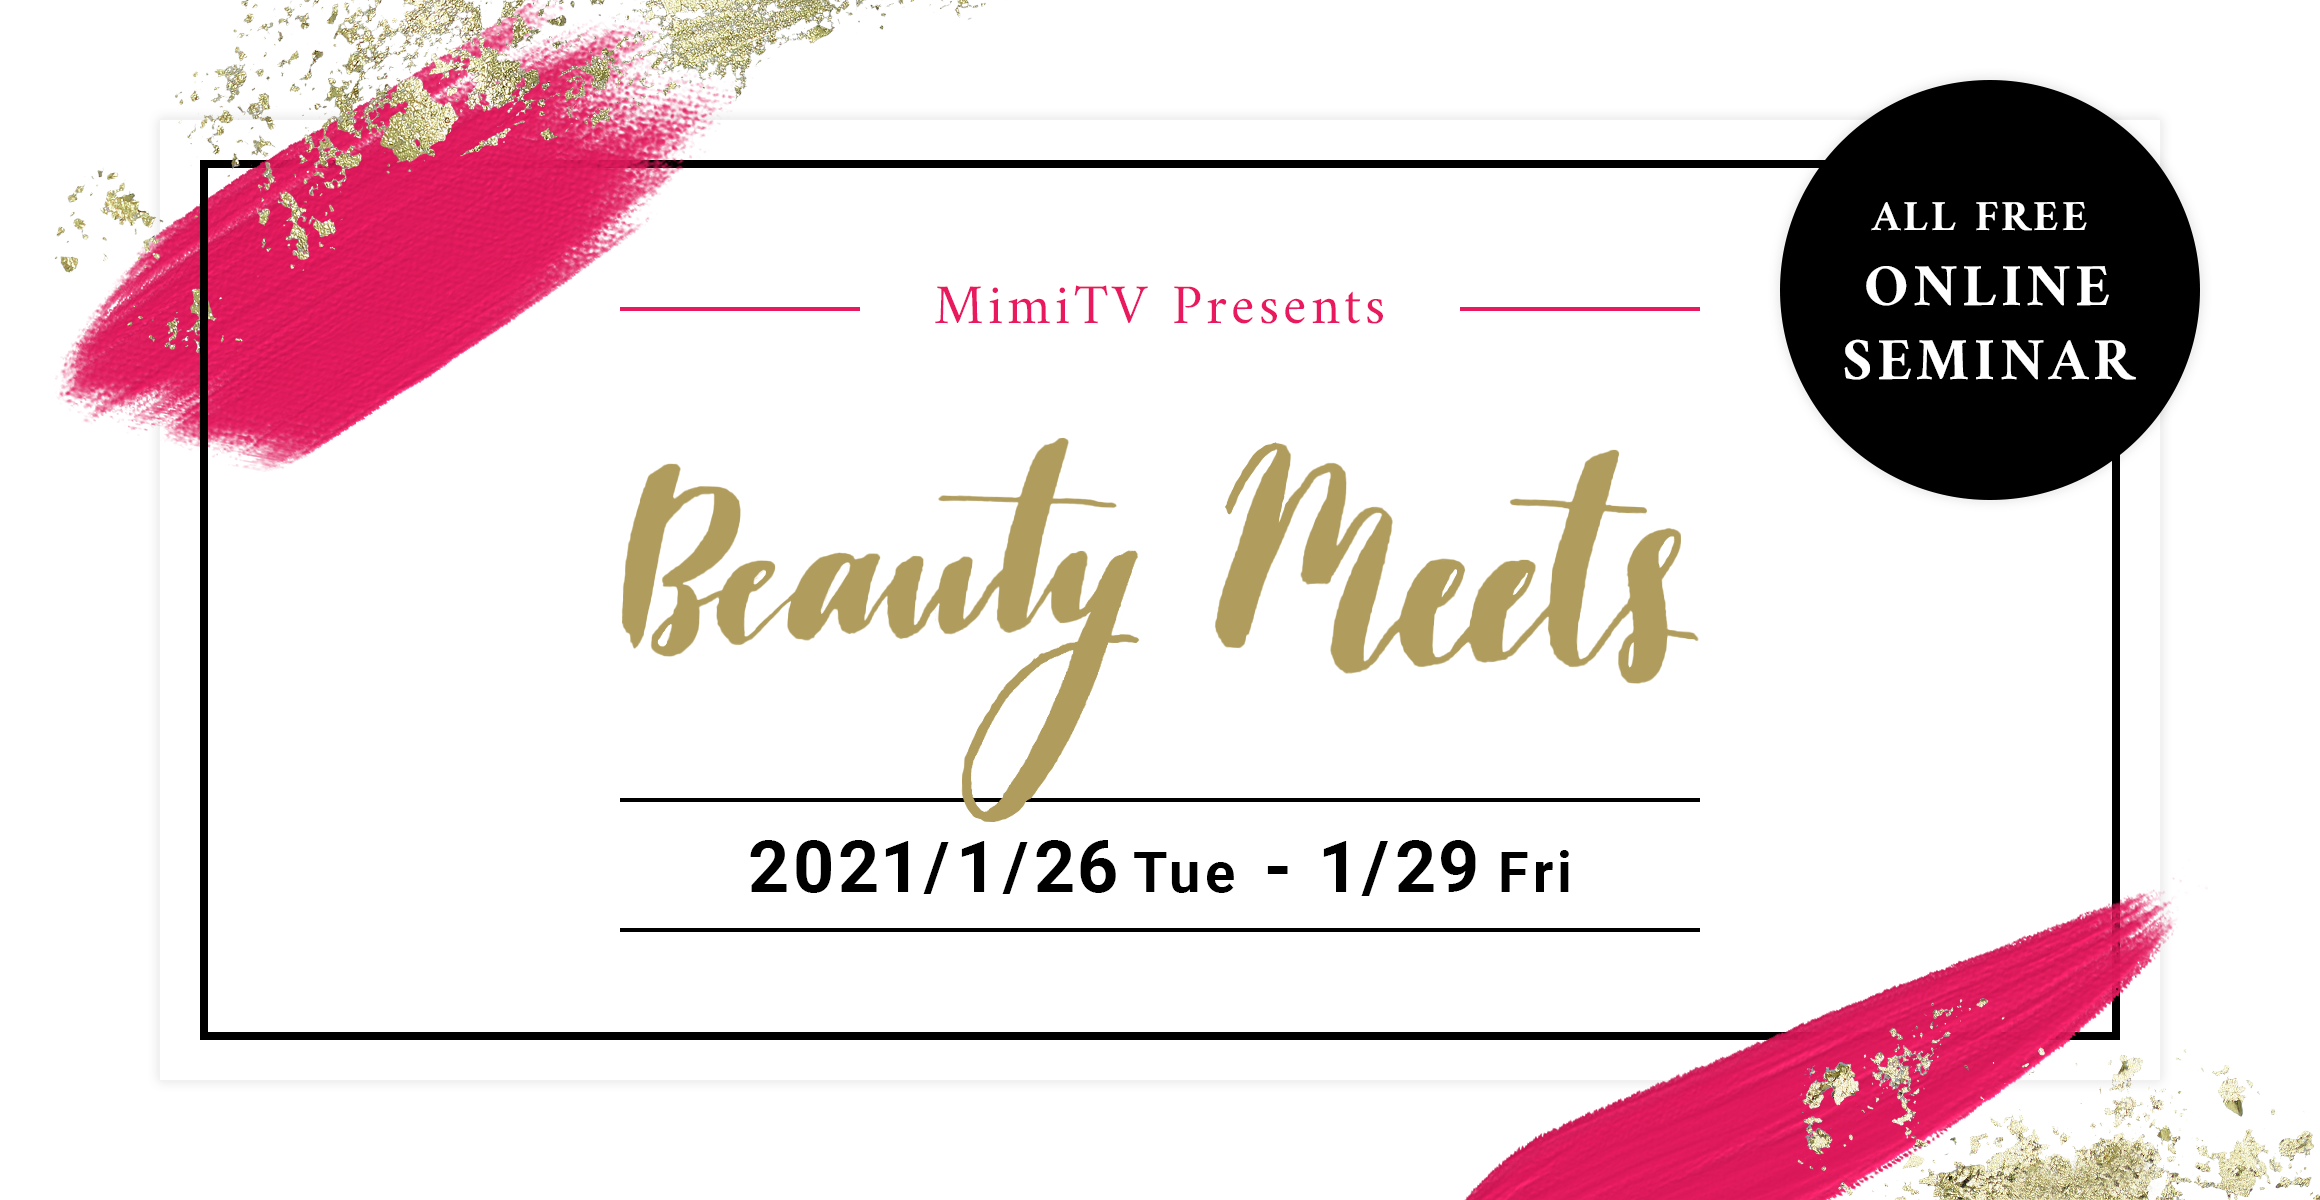 MimiTV Presents Beauty Meets 2021/1/26Tue-1/29fri All FREE ONLINE SEMINAR